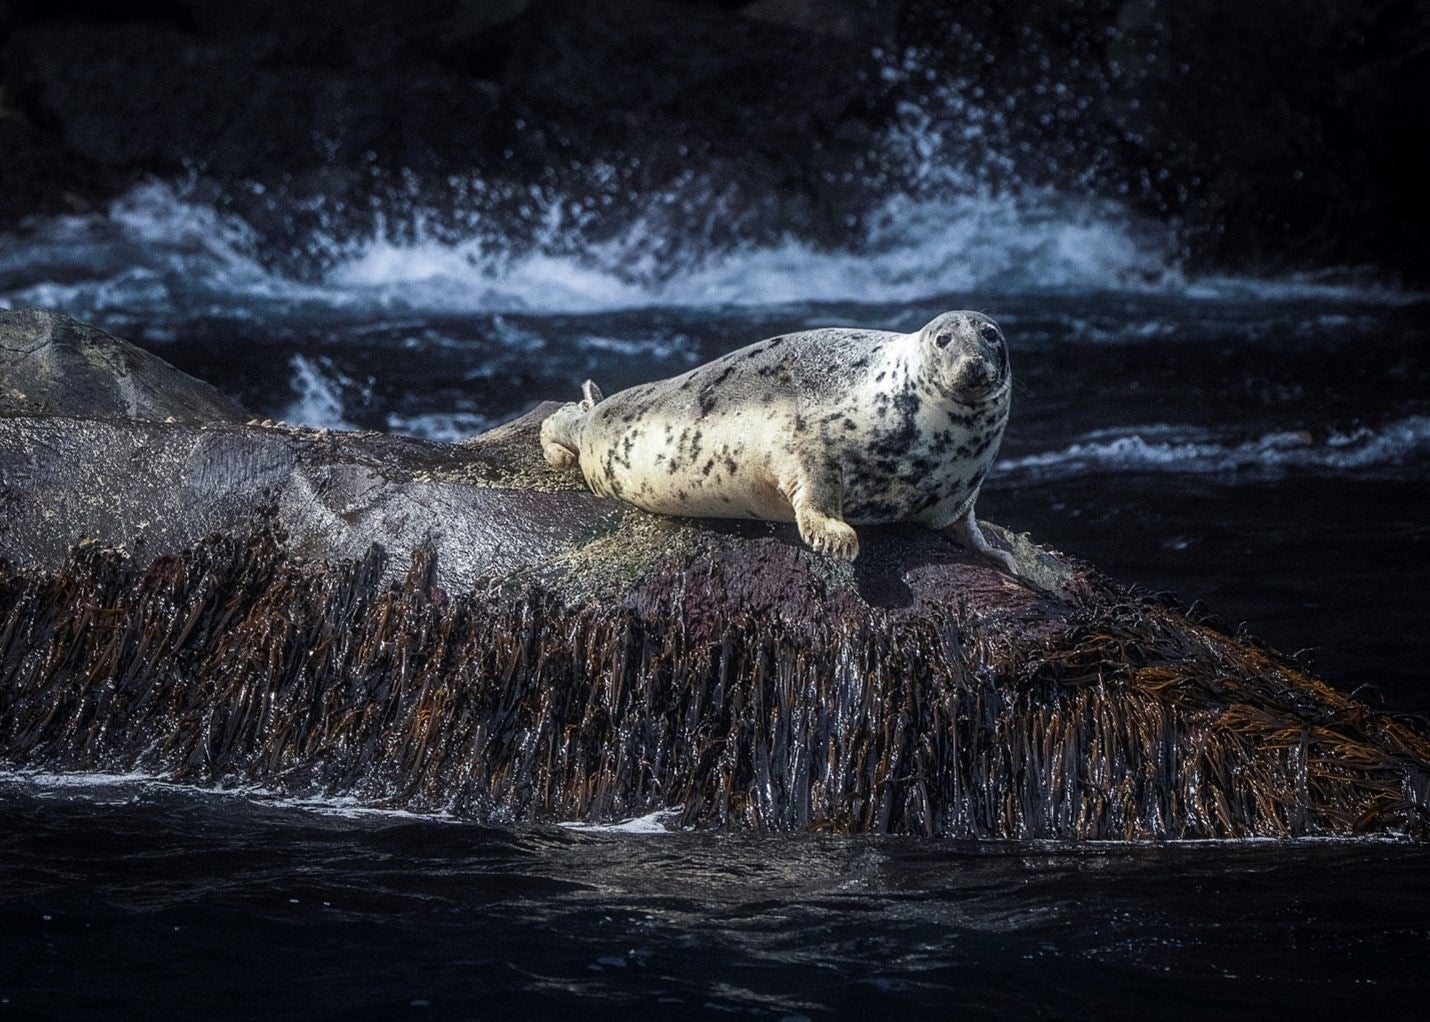 “Serene sunbathing: A gray seal's rocky retreat in Faroe Islands.” Sony Alpha 1. Sony 100-400mm f/4.5-5.6 G Master. 1/6400-sec., f/5.6, ISO 2000